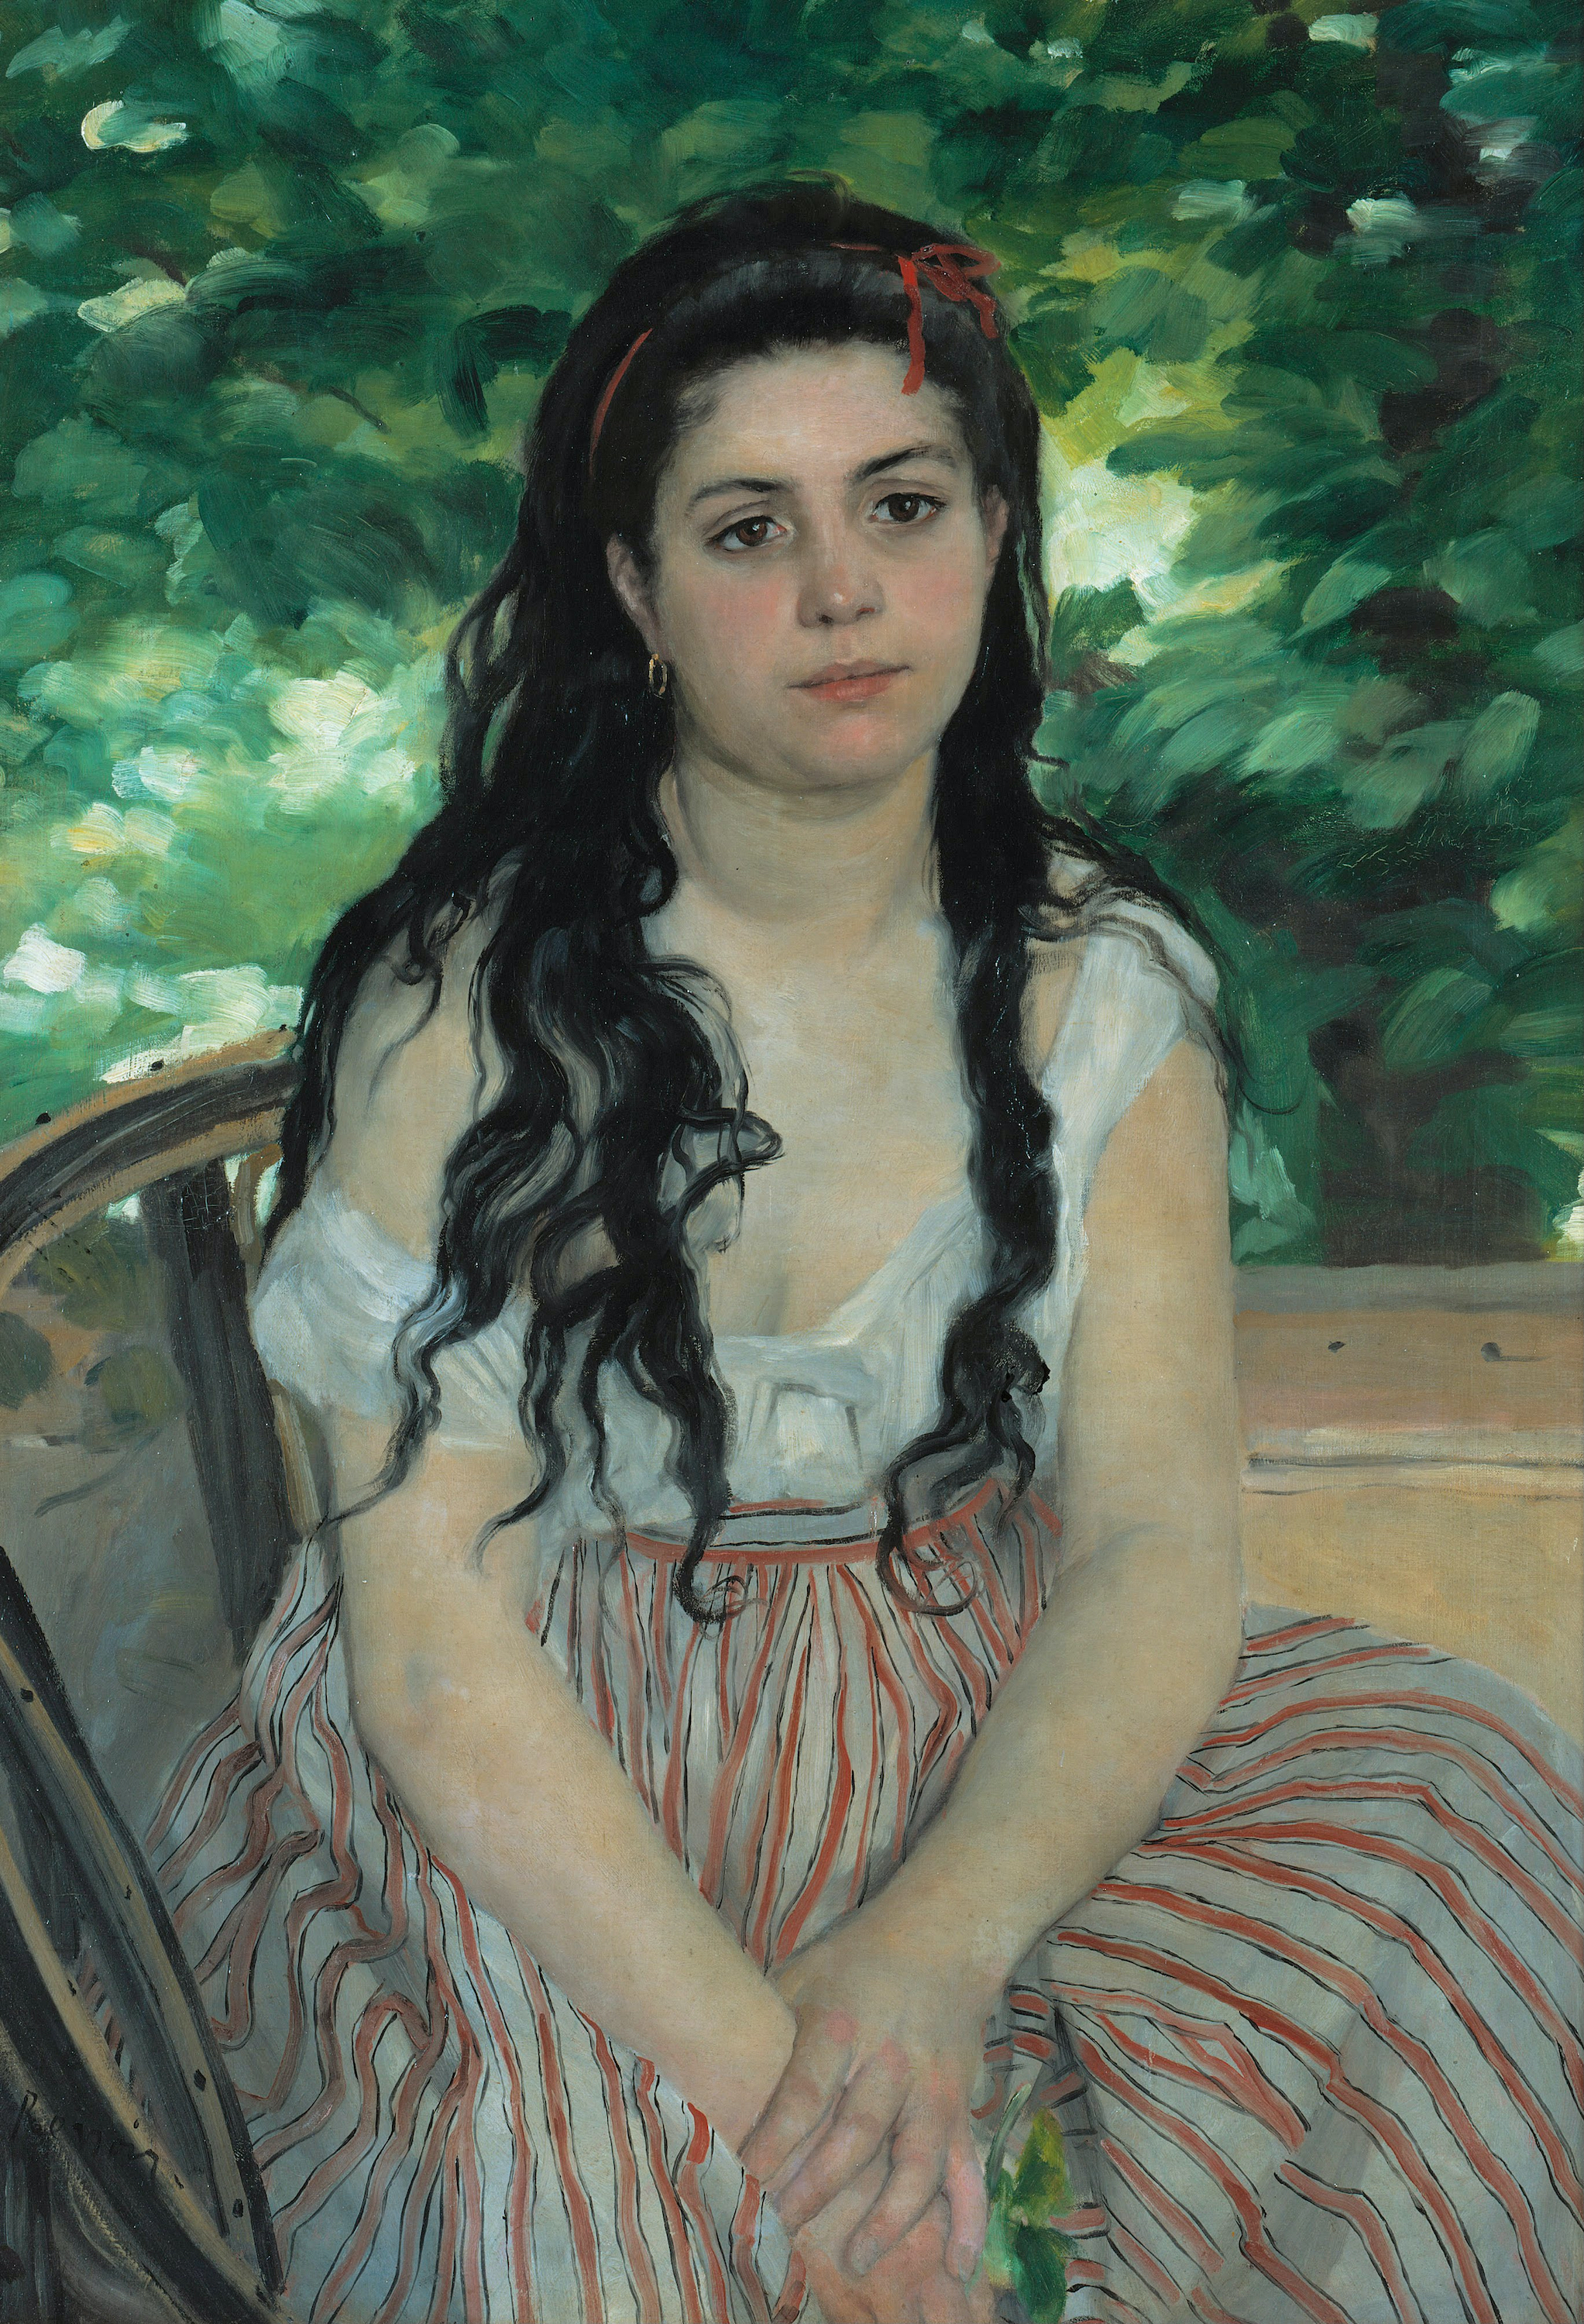 En été, la bohémienne by Pierre-Auguste Renoir - 1868 - 59 x 85 cm Alte Nationalgalerie